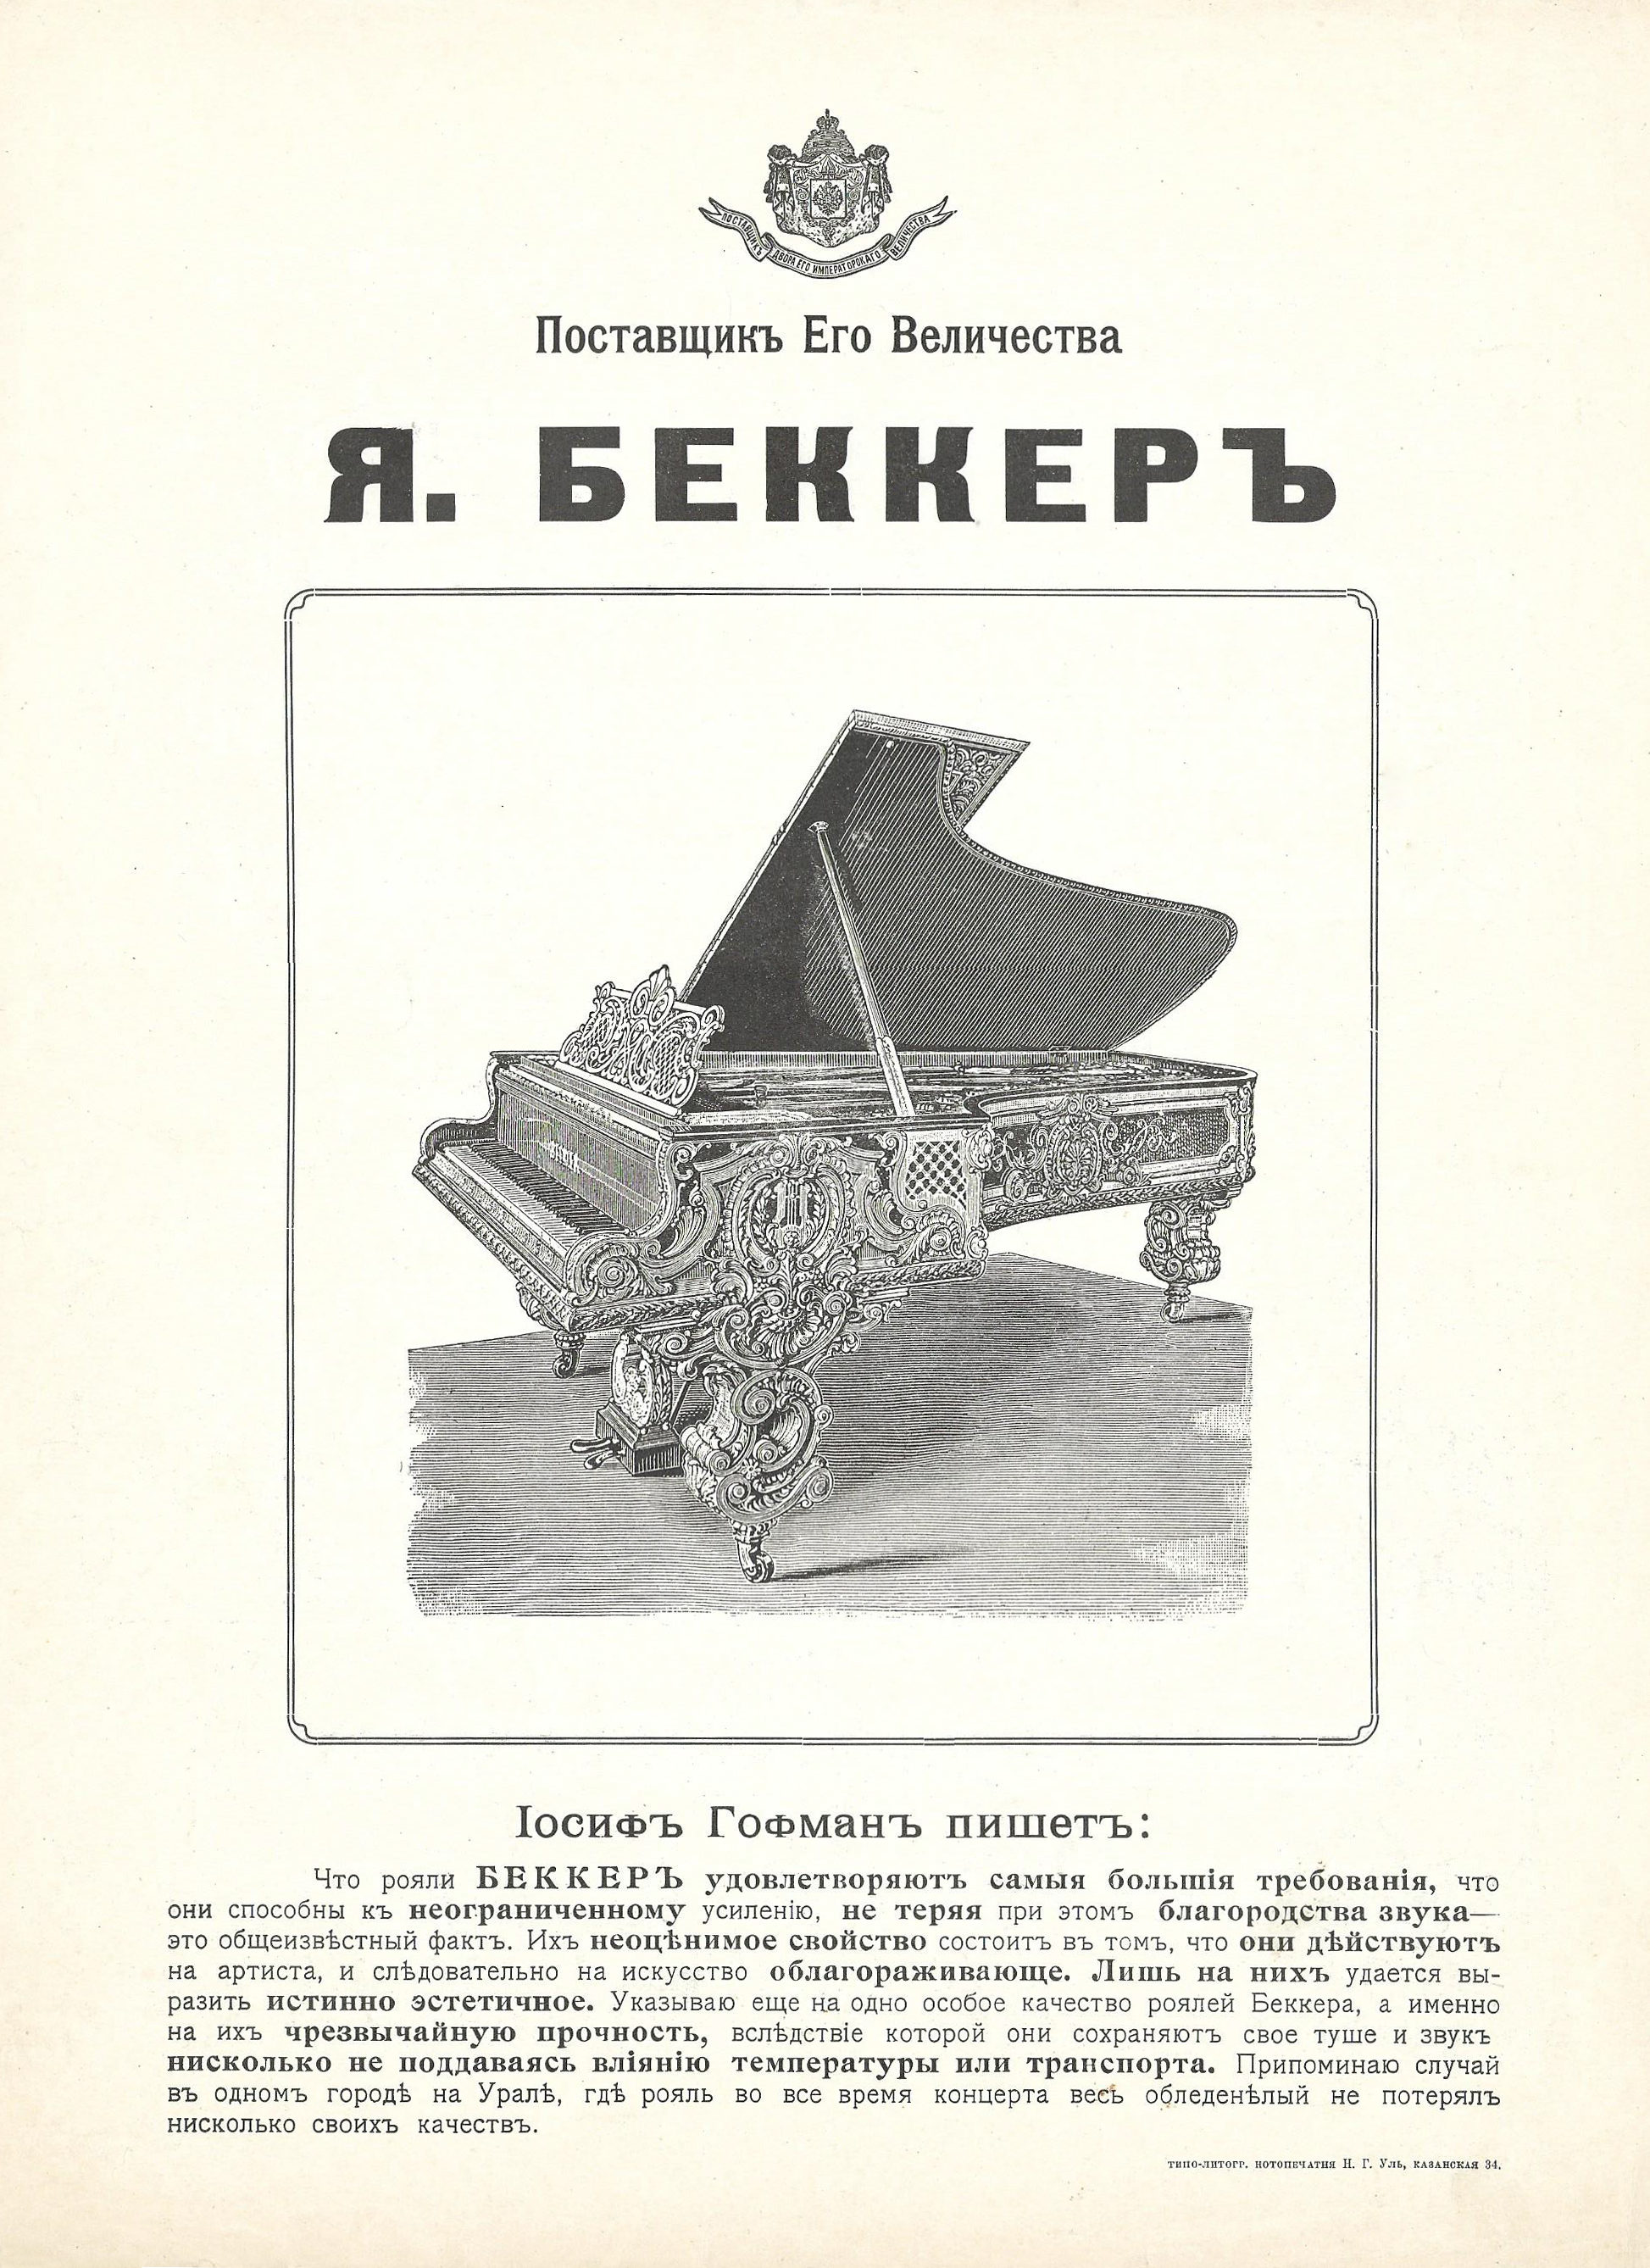 Старинная реклама роялей Беккер